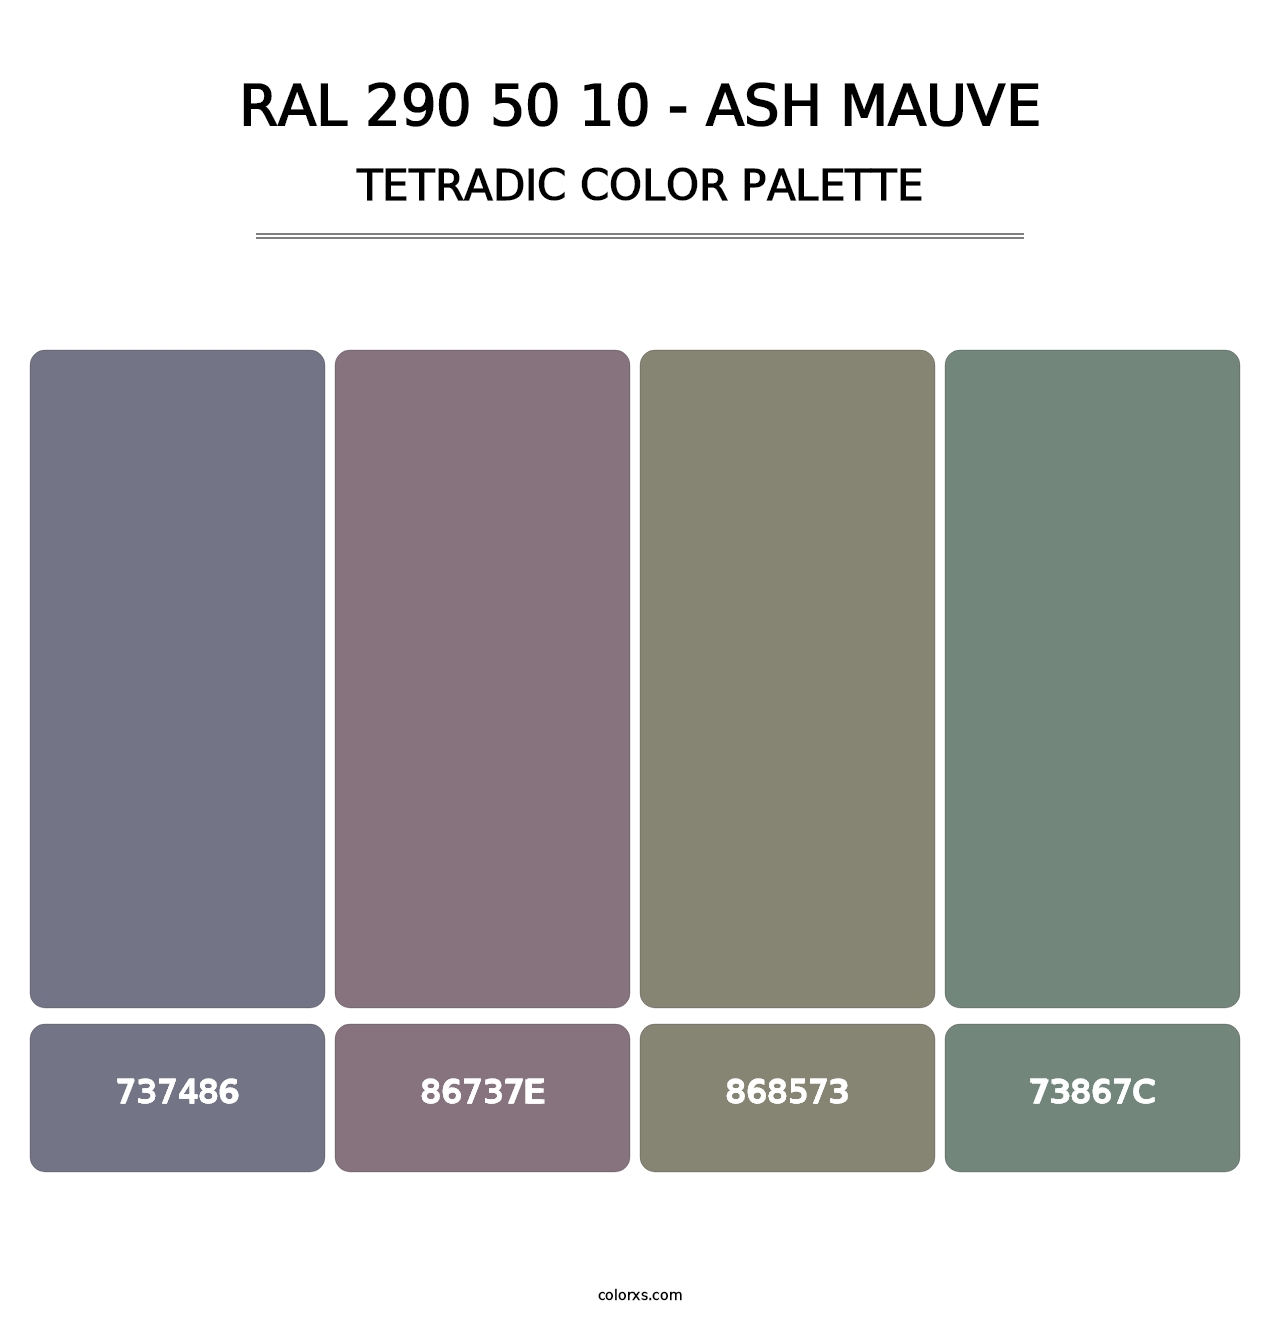 RAL 290 50 10 - Ash Mauve - Tetradic Color Palette